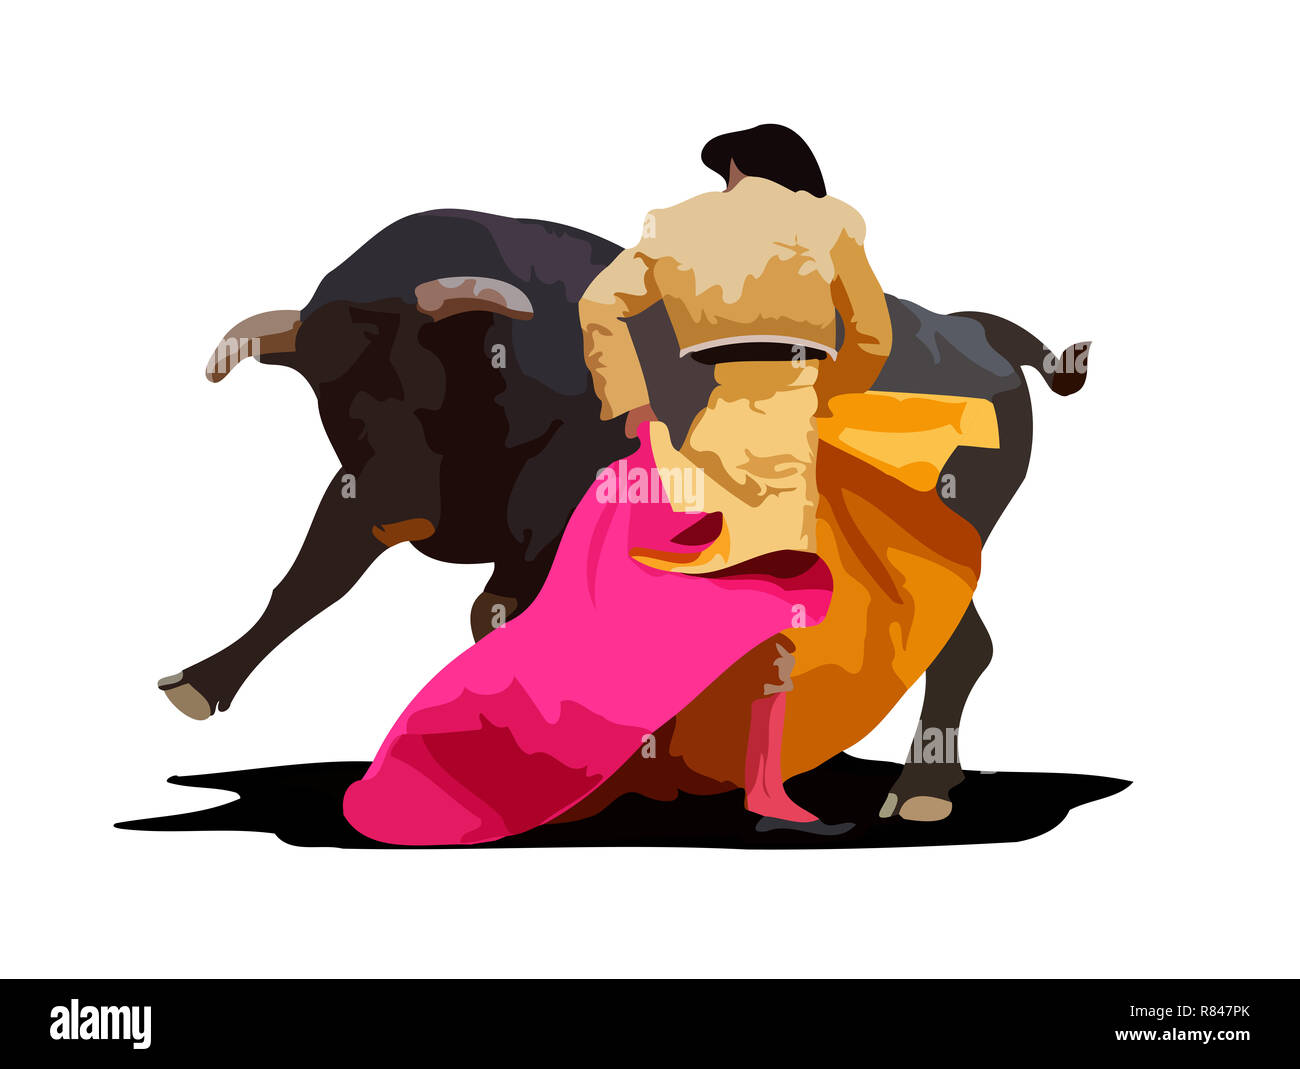 bullring spanish bullfighting person animal culture show illustration Stock Photo